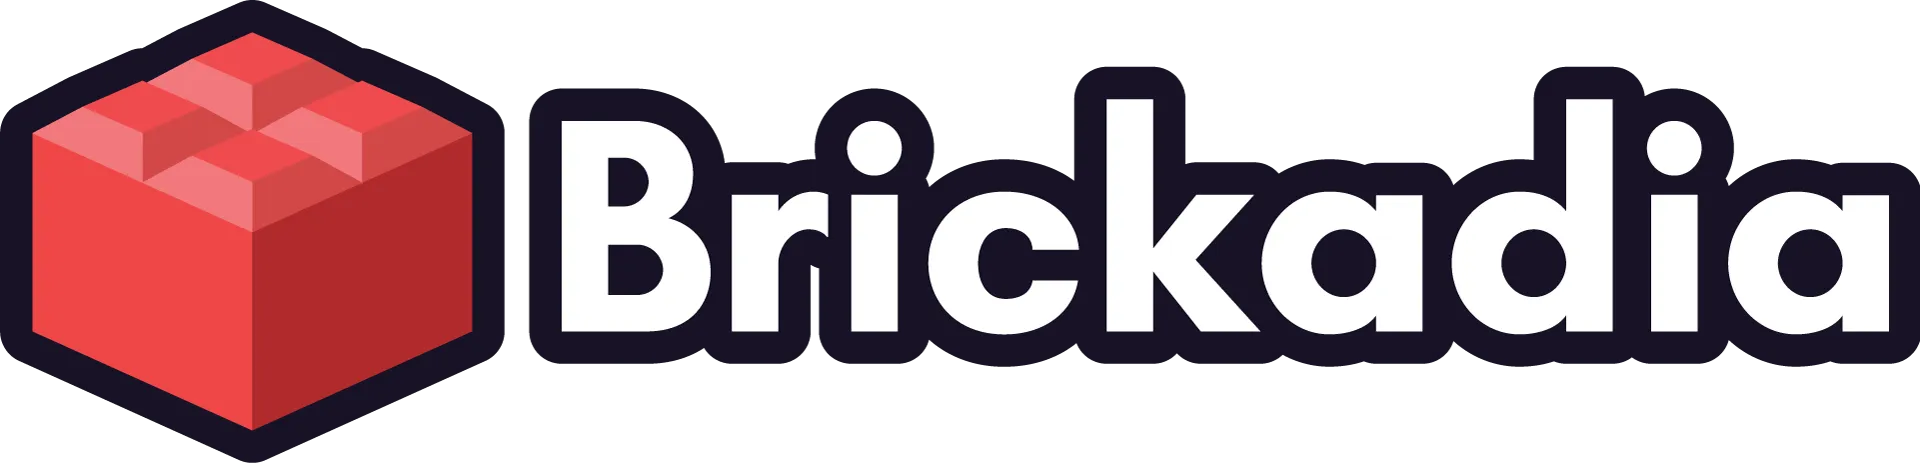 Brickadia logo